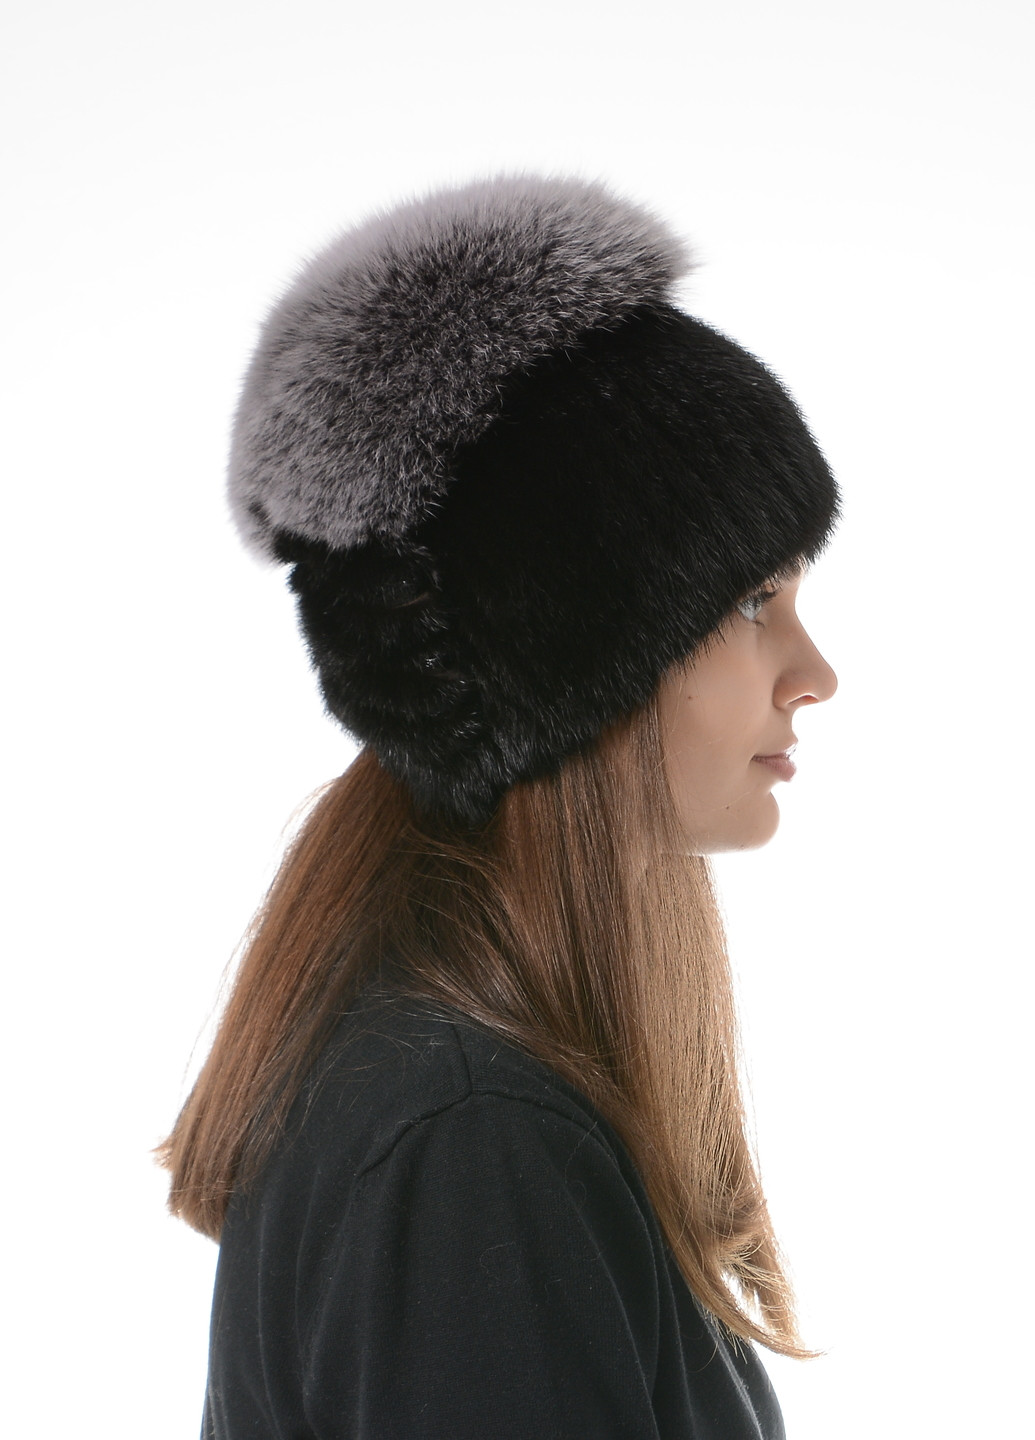 Жіноча зимова в'язана норкова шапка з помпоном Меховой Стиль стрекоза (257421599)